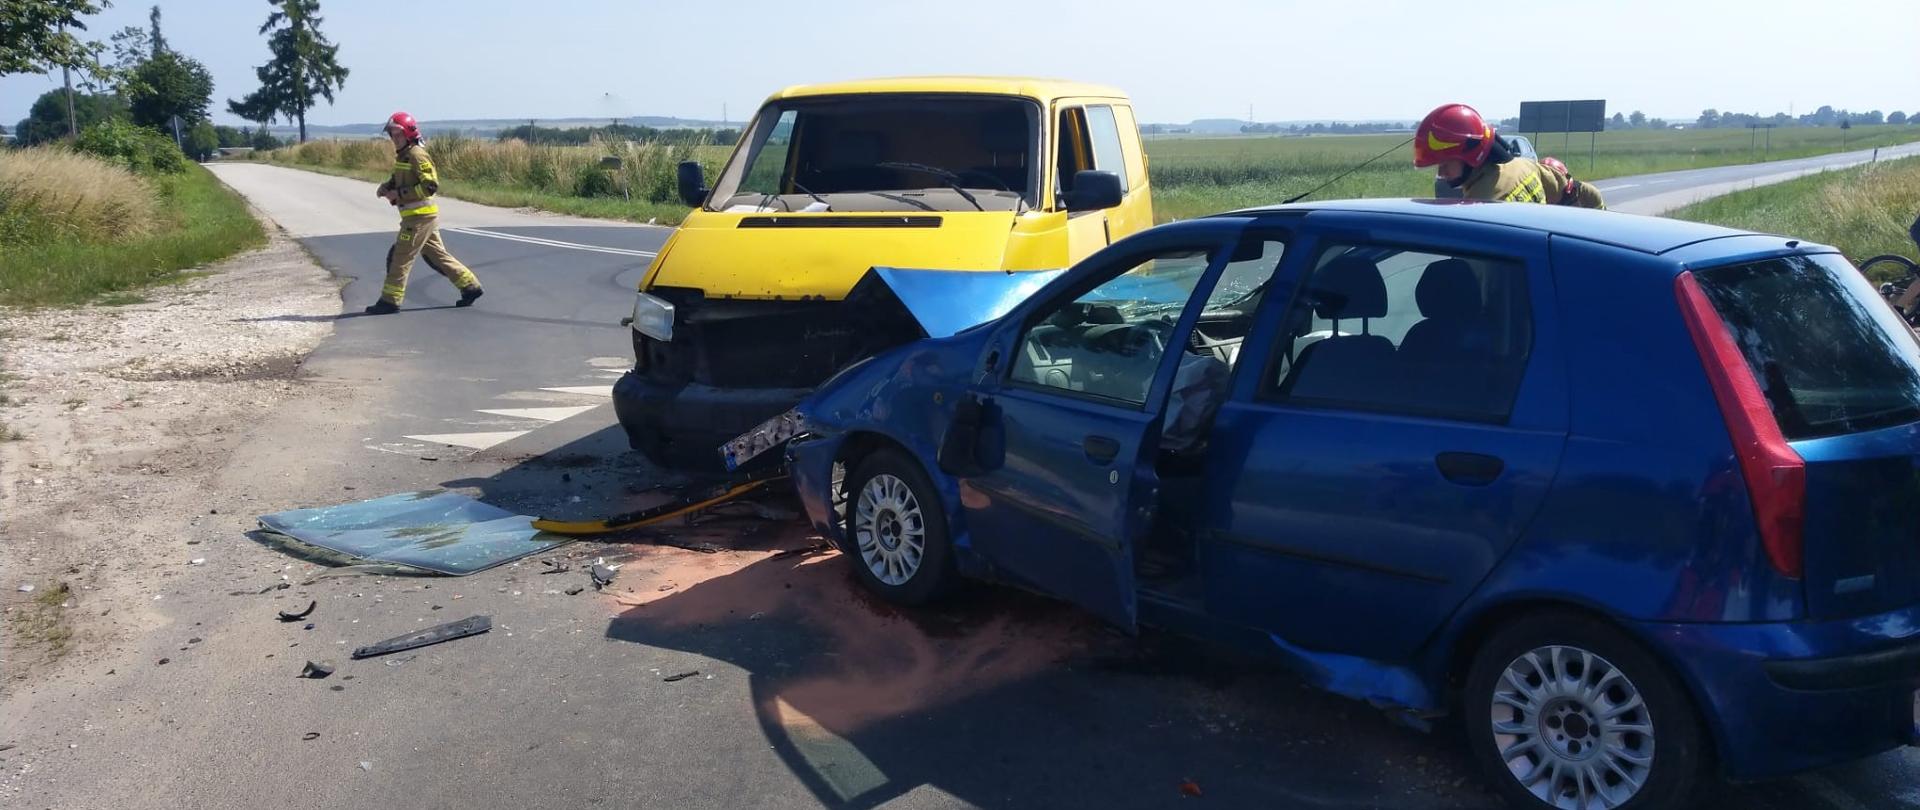 Wypadek drogowy w miejscowości Drożejowice